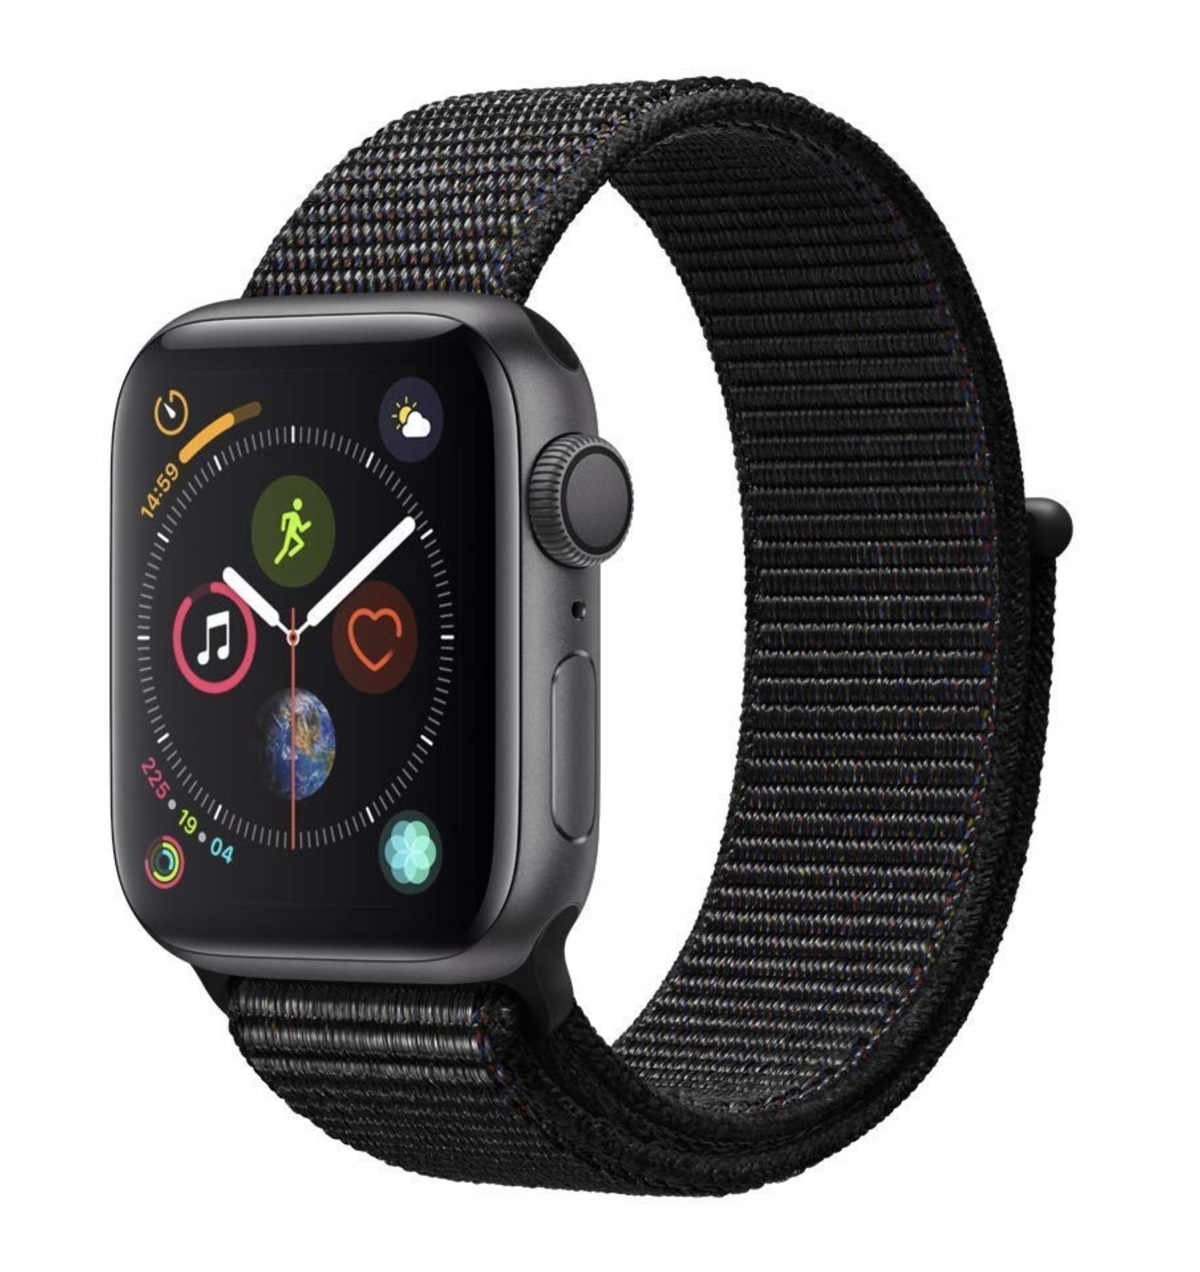 L'Apple Watch Series 4 dès 379 euros sur Amazon